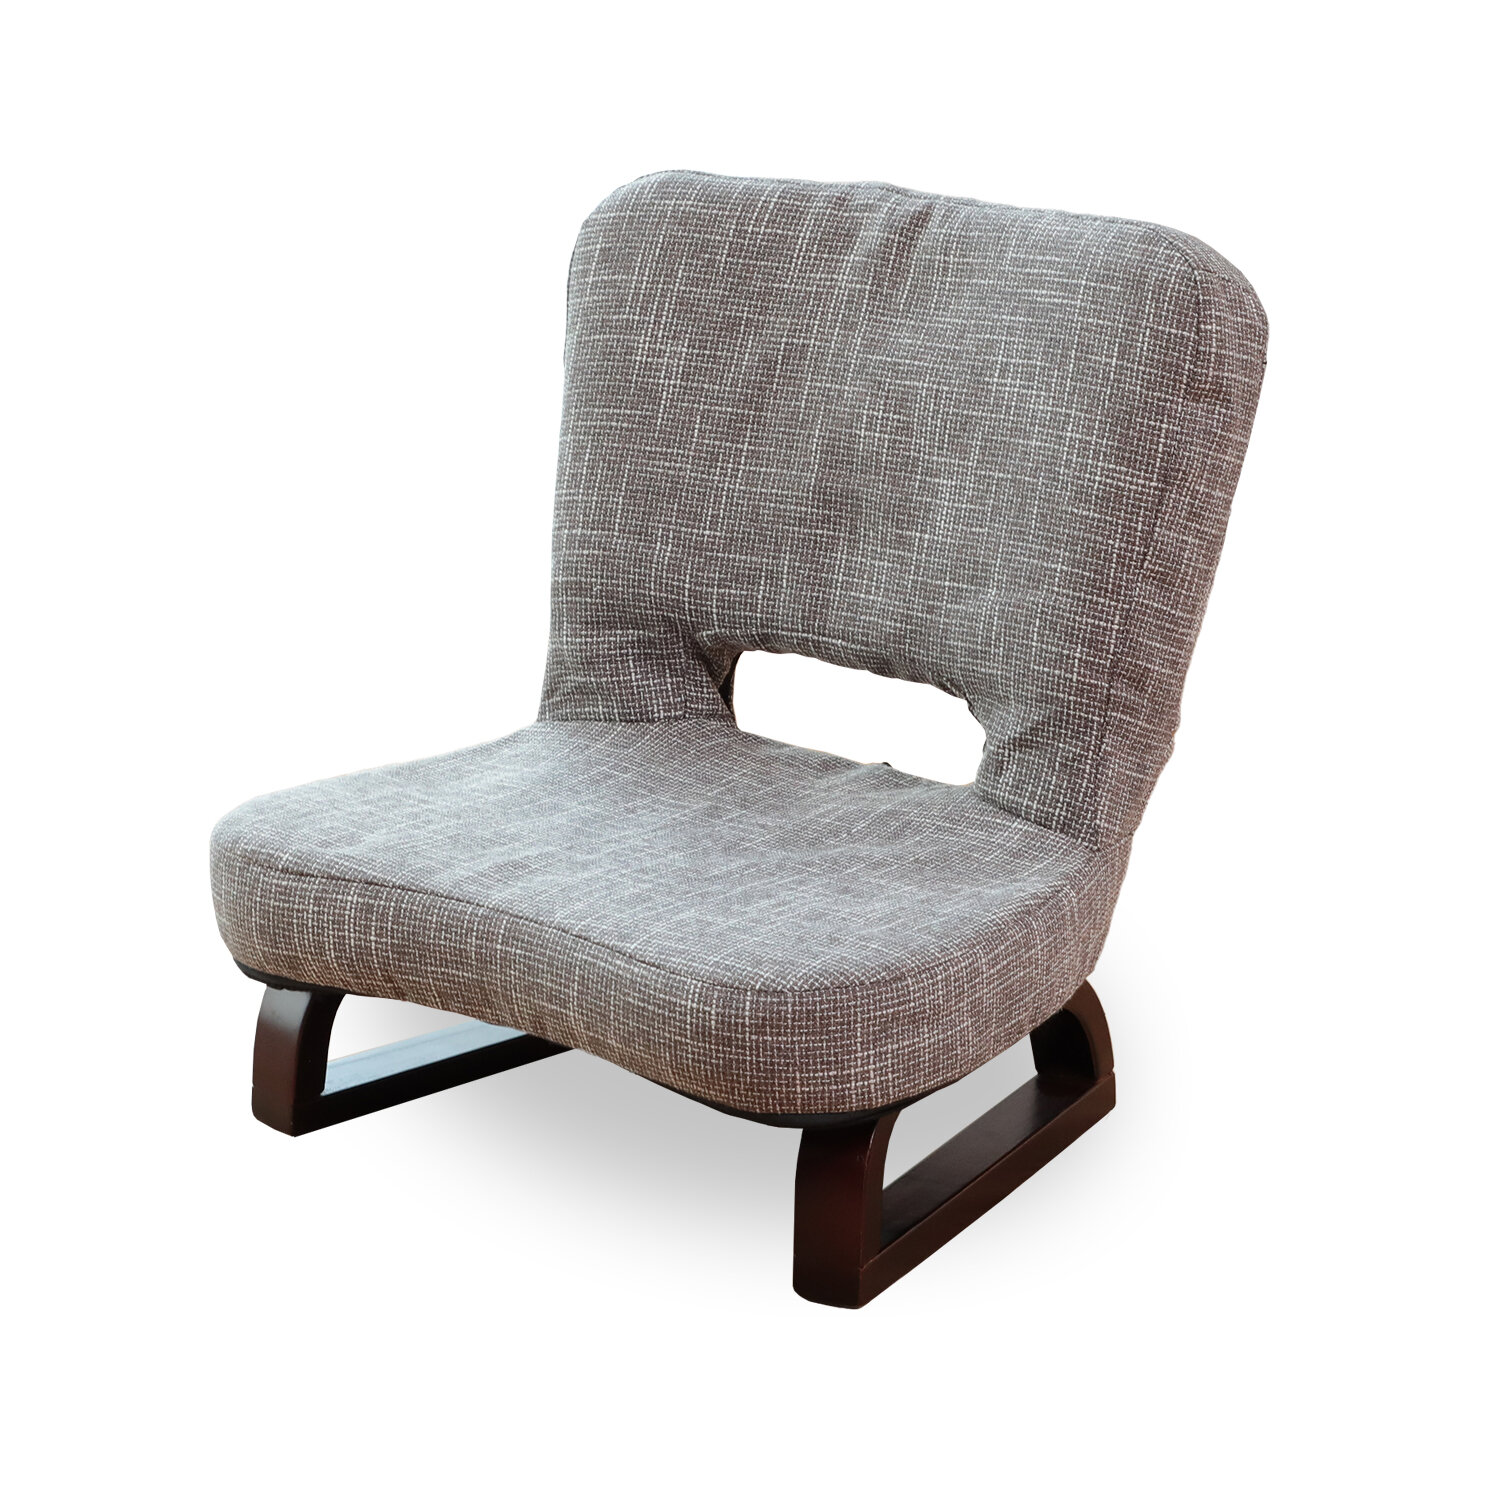 座椅子製品（国内No.1シェアメーカー） — 明光ホームテック株式会社 | MEIKO HOME TEC CO., LTD.